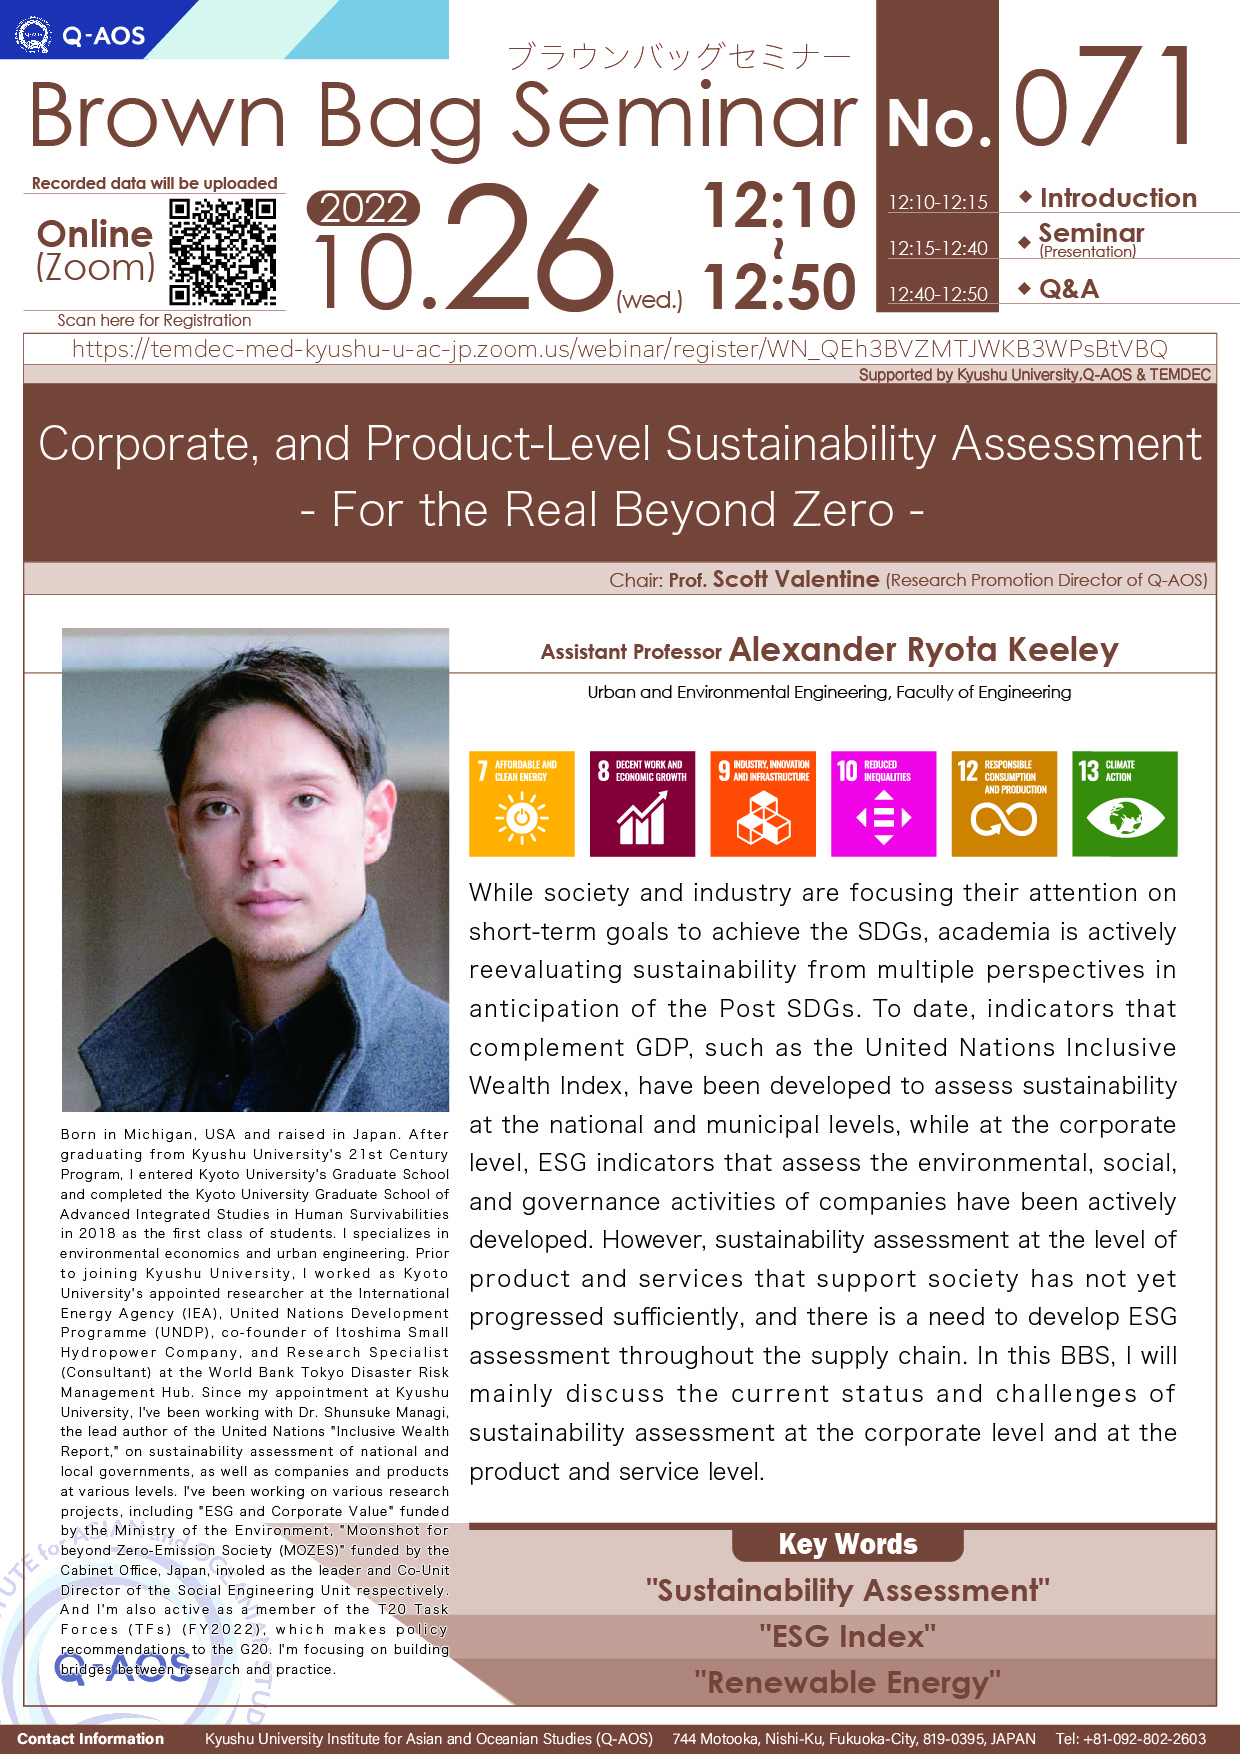 アイキャッチ画像：Kyushu University Institute for Asian and Oceanian Studies (Q-AOS) Brown Bag Seminar Series The 71th Seminar 「Corporate, and Product-Level Sustainability Assessment  - For the Real Beyond Zero - 」